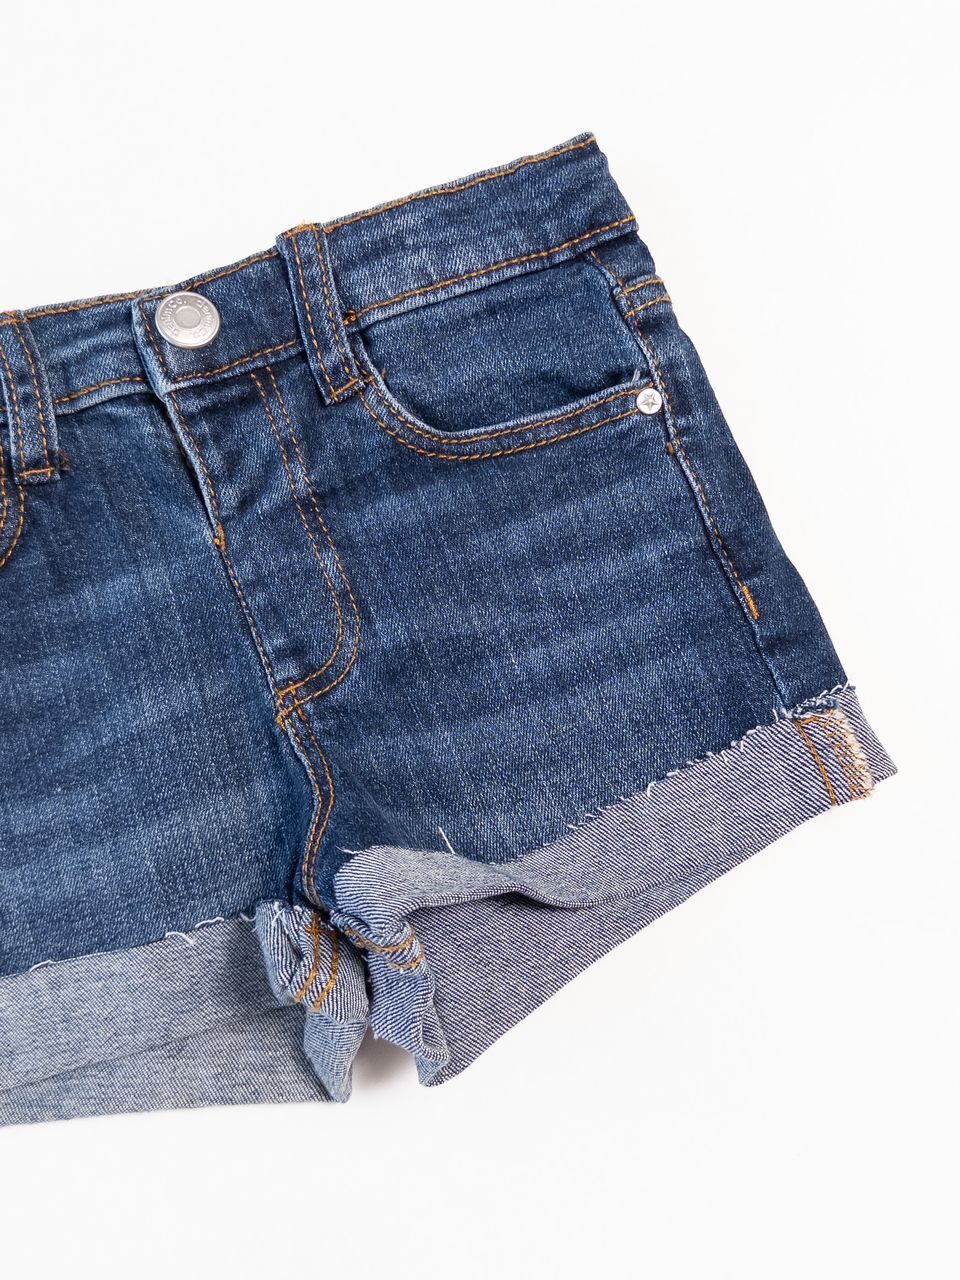 Шорты джинсовые для девочки на кнопке с утягивающей резинкой цвет синий на рост 104 см 3-4 года Primark